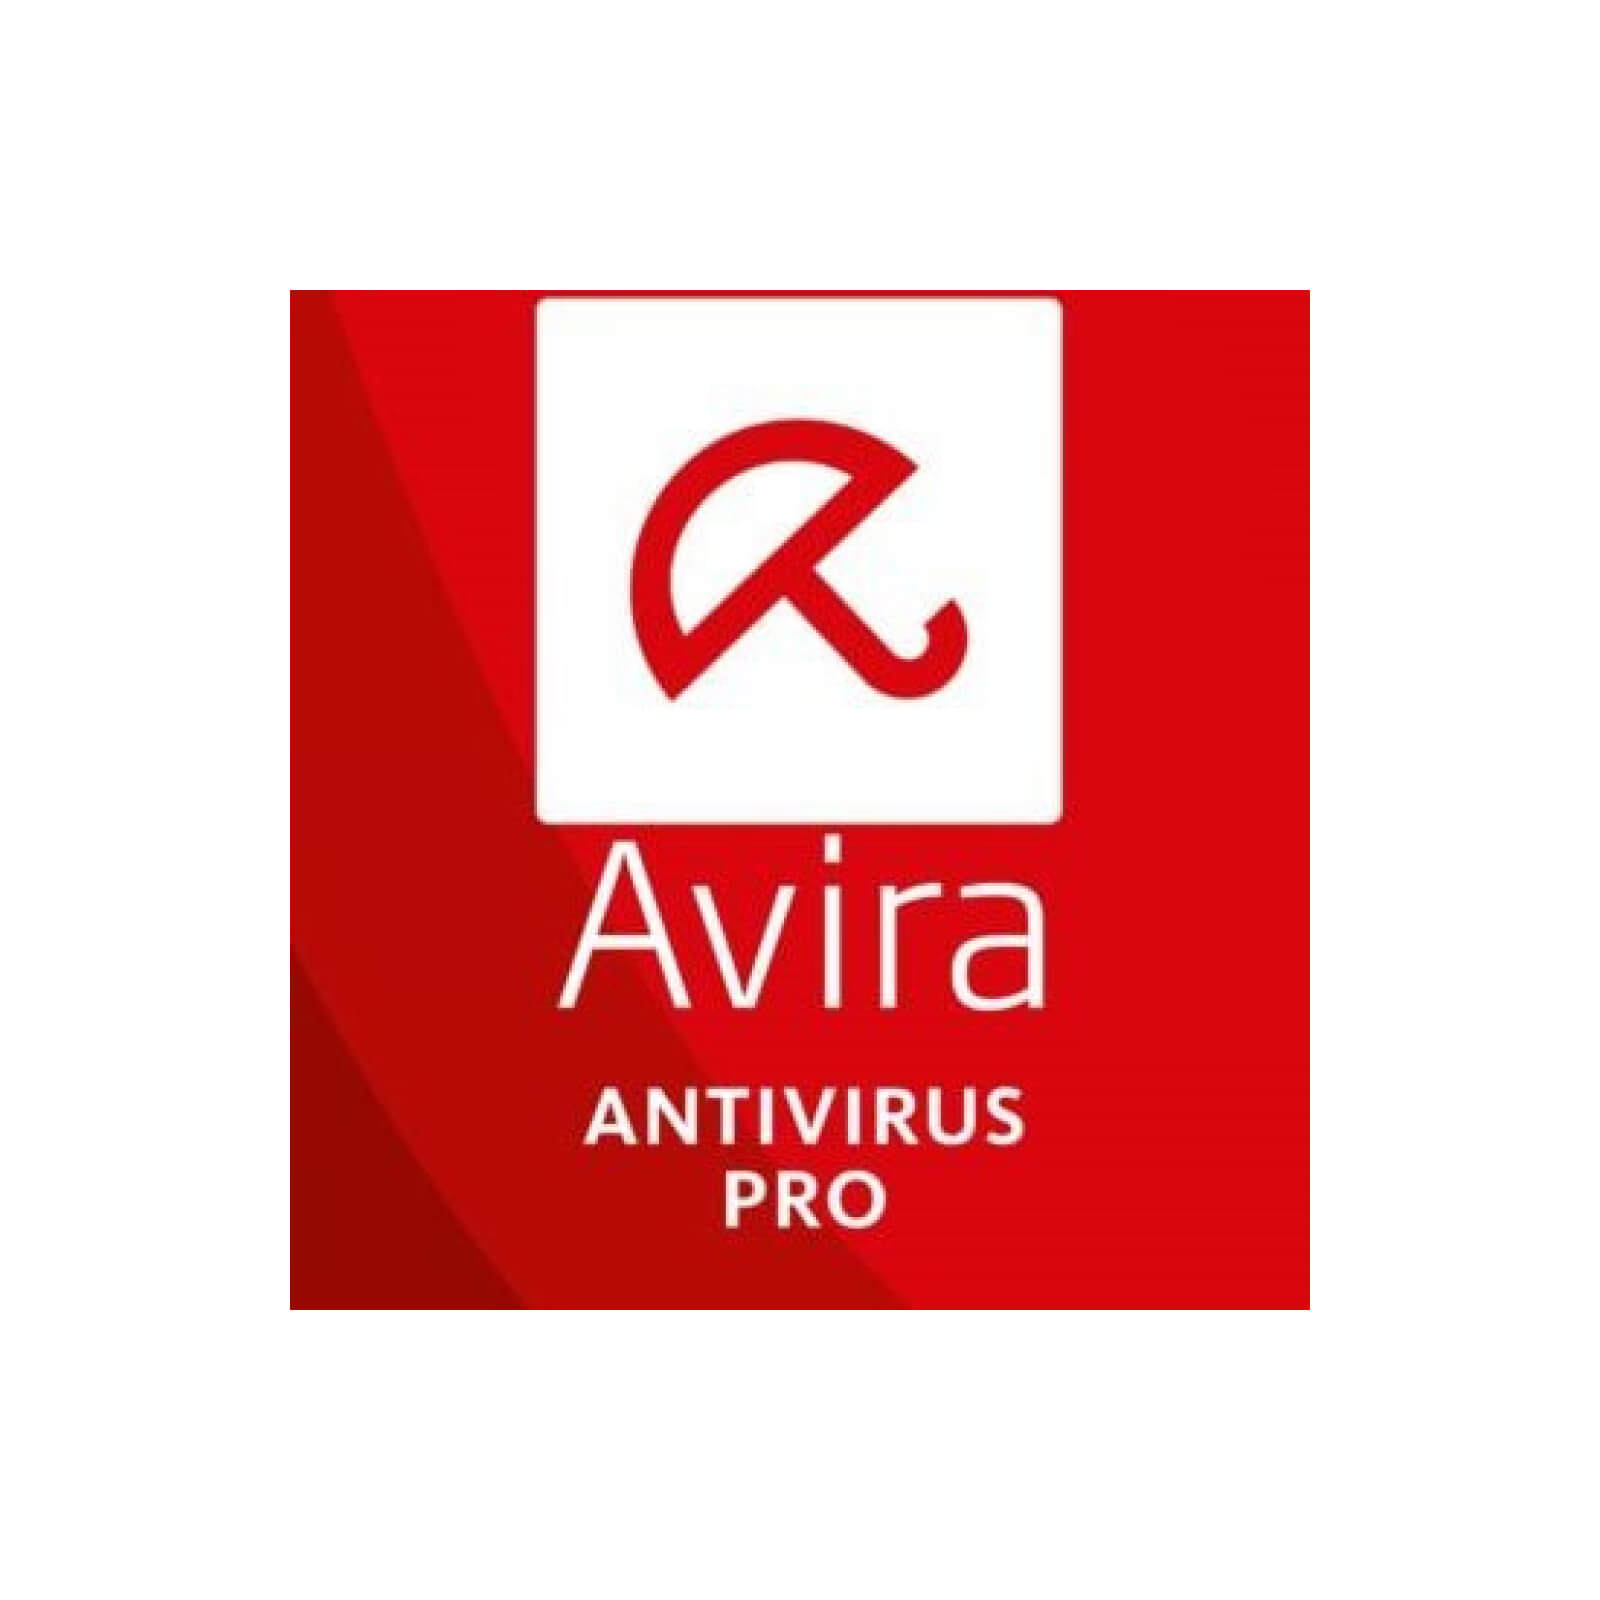 antivirus avira free download for windows 7